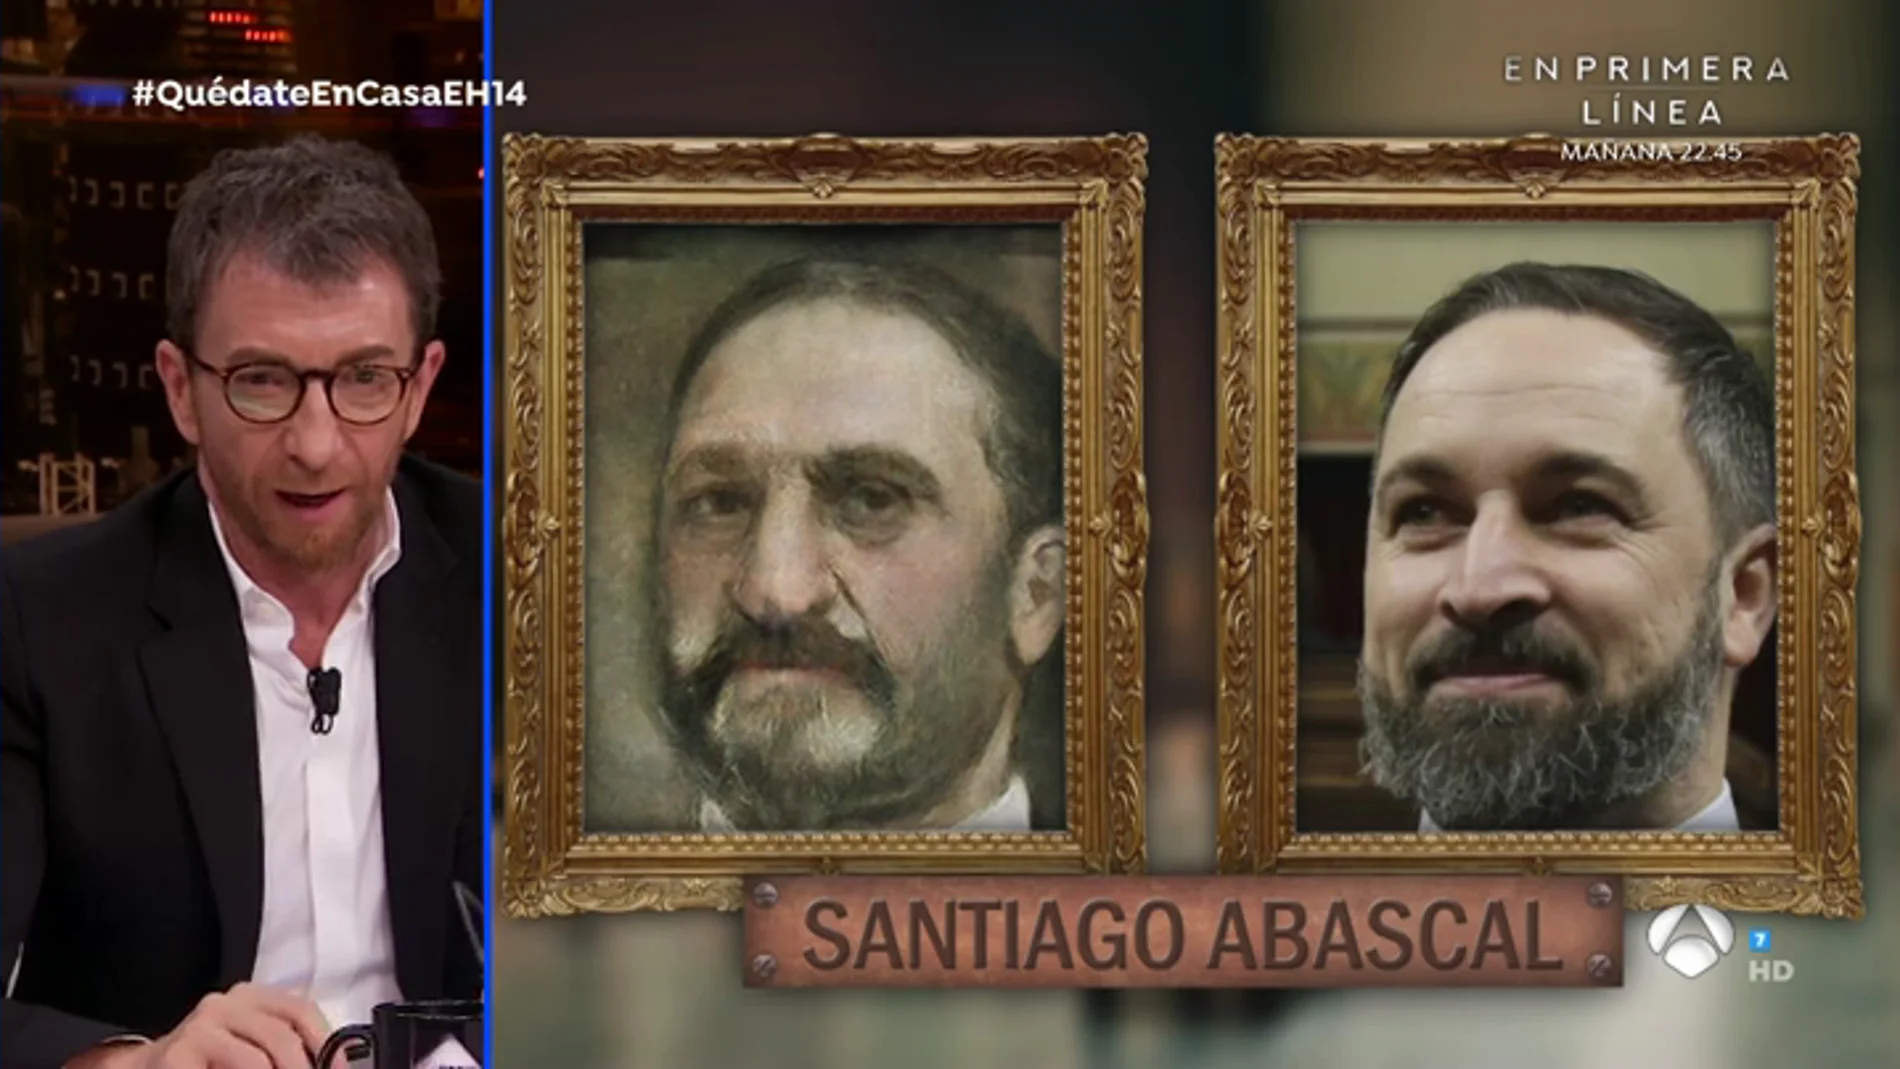 Trancas y Barrancas convierten a personajes famosos en cuadros renacentistas